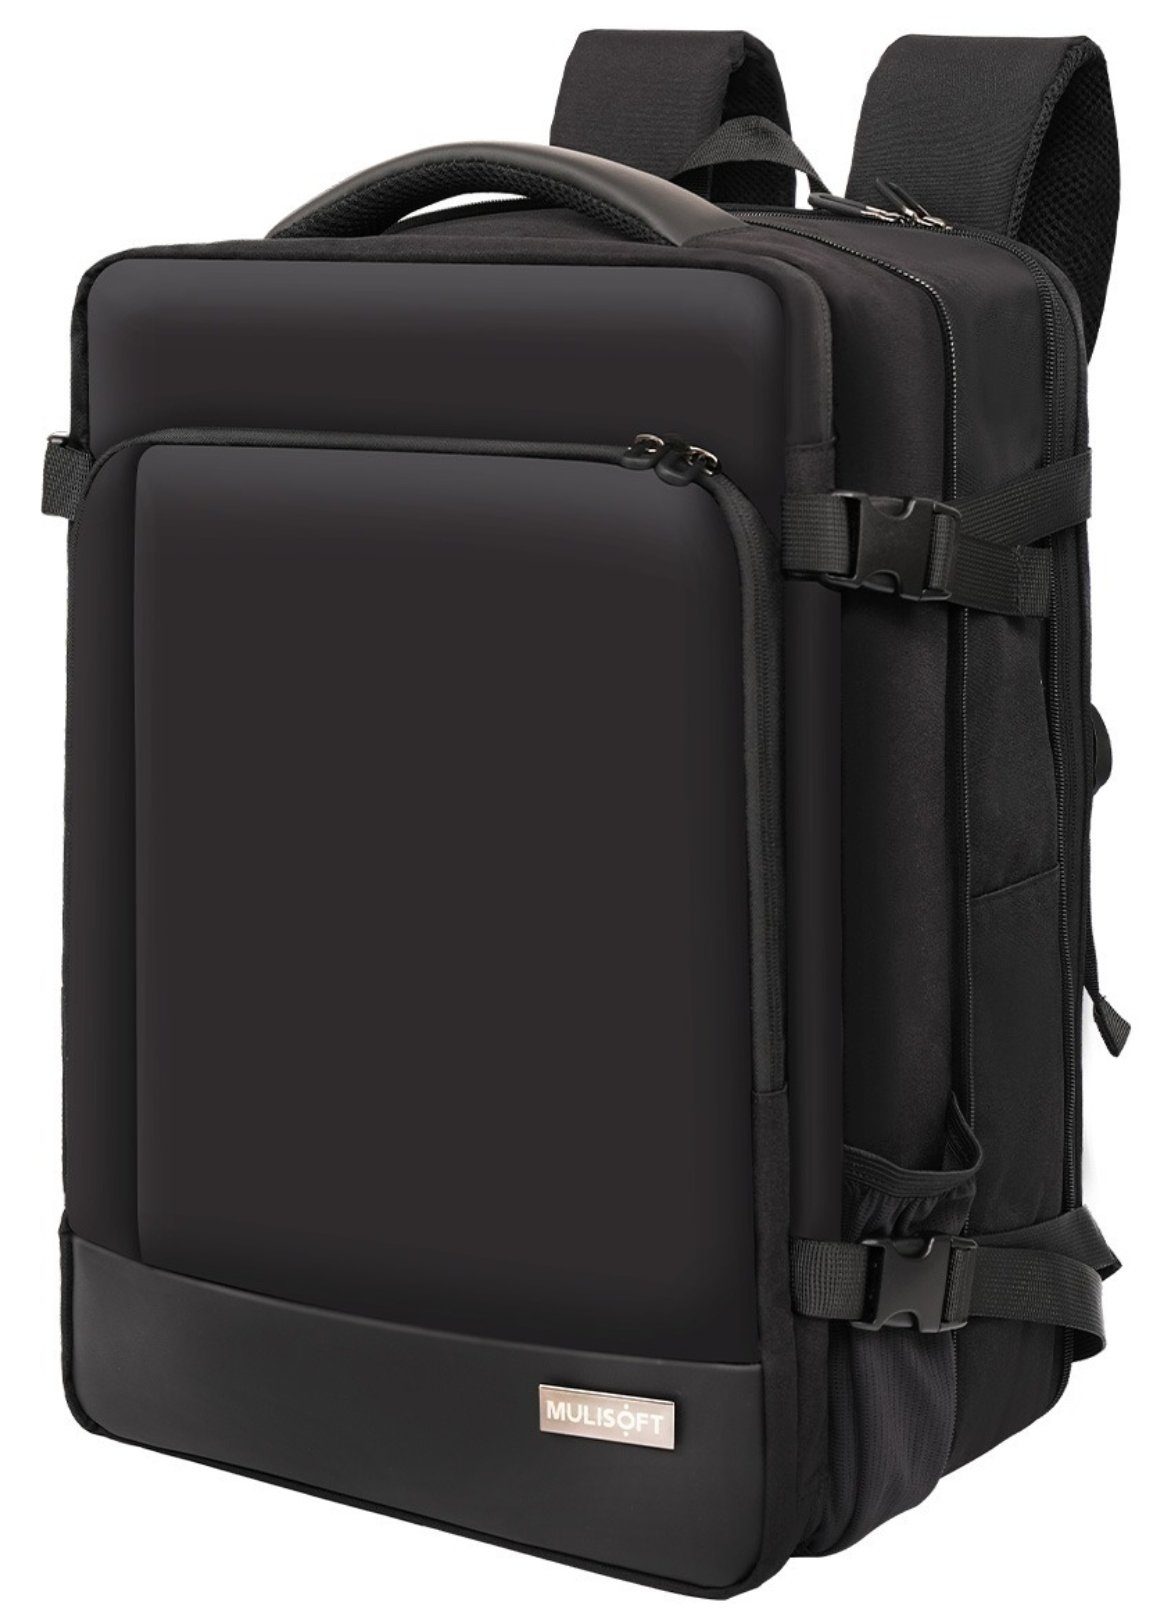 MULISOFT Freizeitrucksack Reiserucksack Erweiterbarer Laptoprucksack und Laptop,Schwarz, 17 Laptopfach 46x32x28cm mit für zoll USB-Ladeanschluss